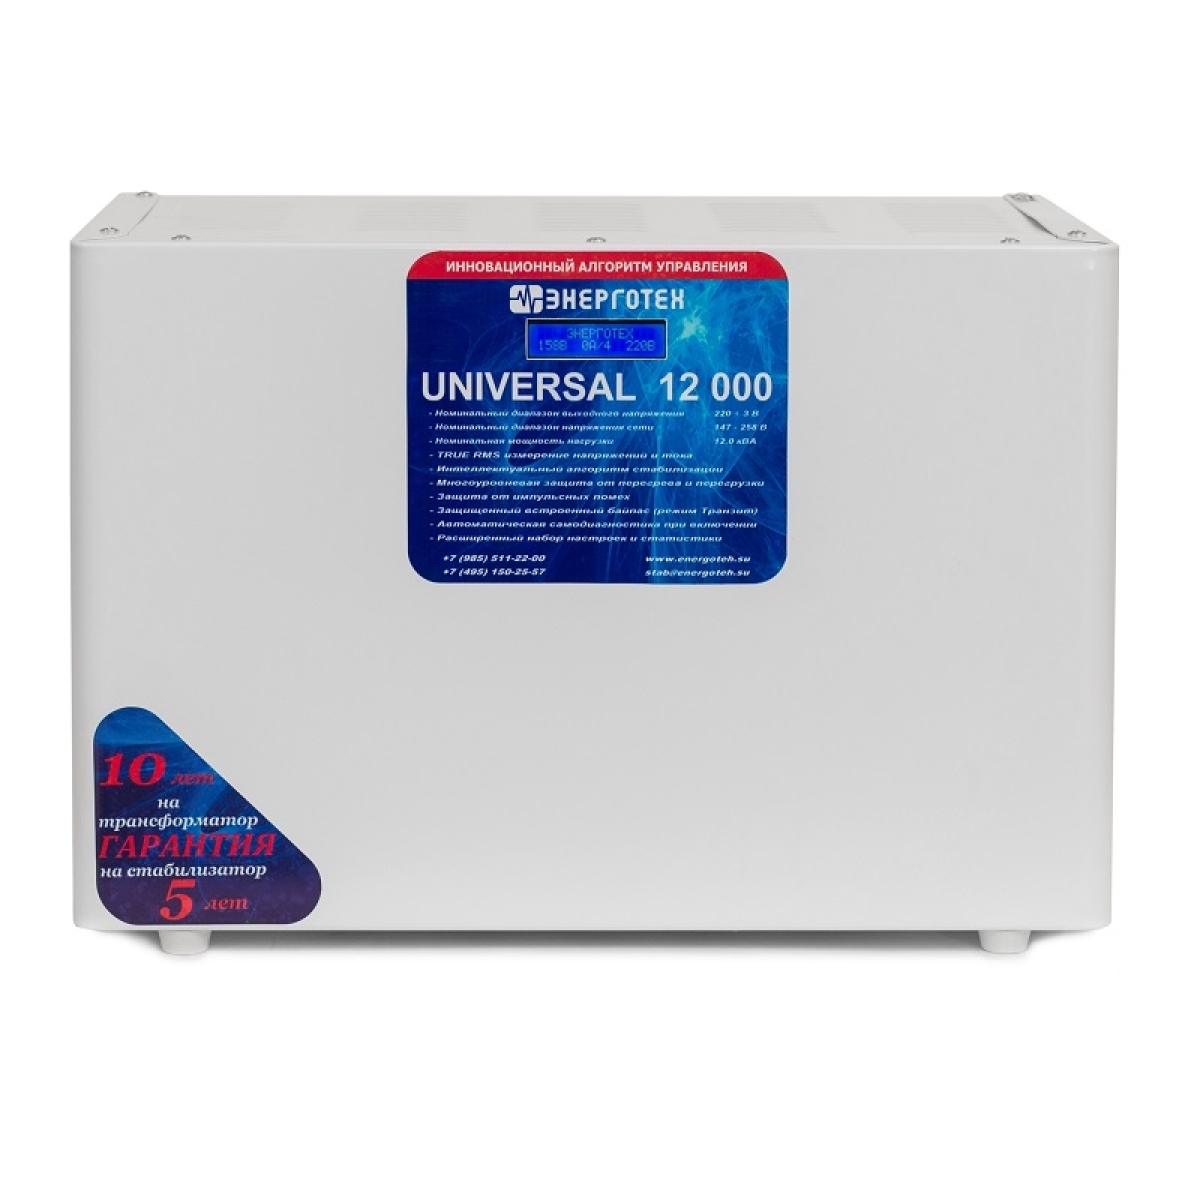 Однофазный стабилизатор Энерготех UNIVERSAL 12000(HV)